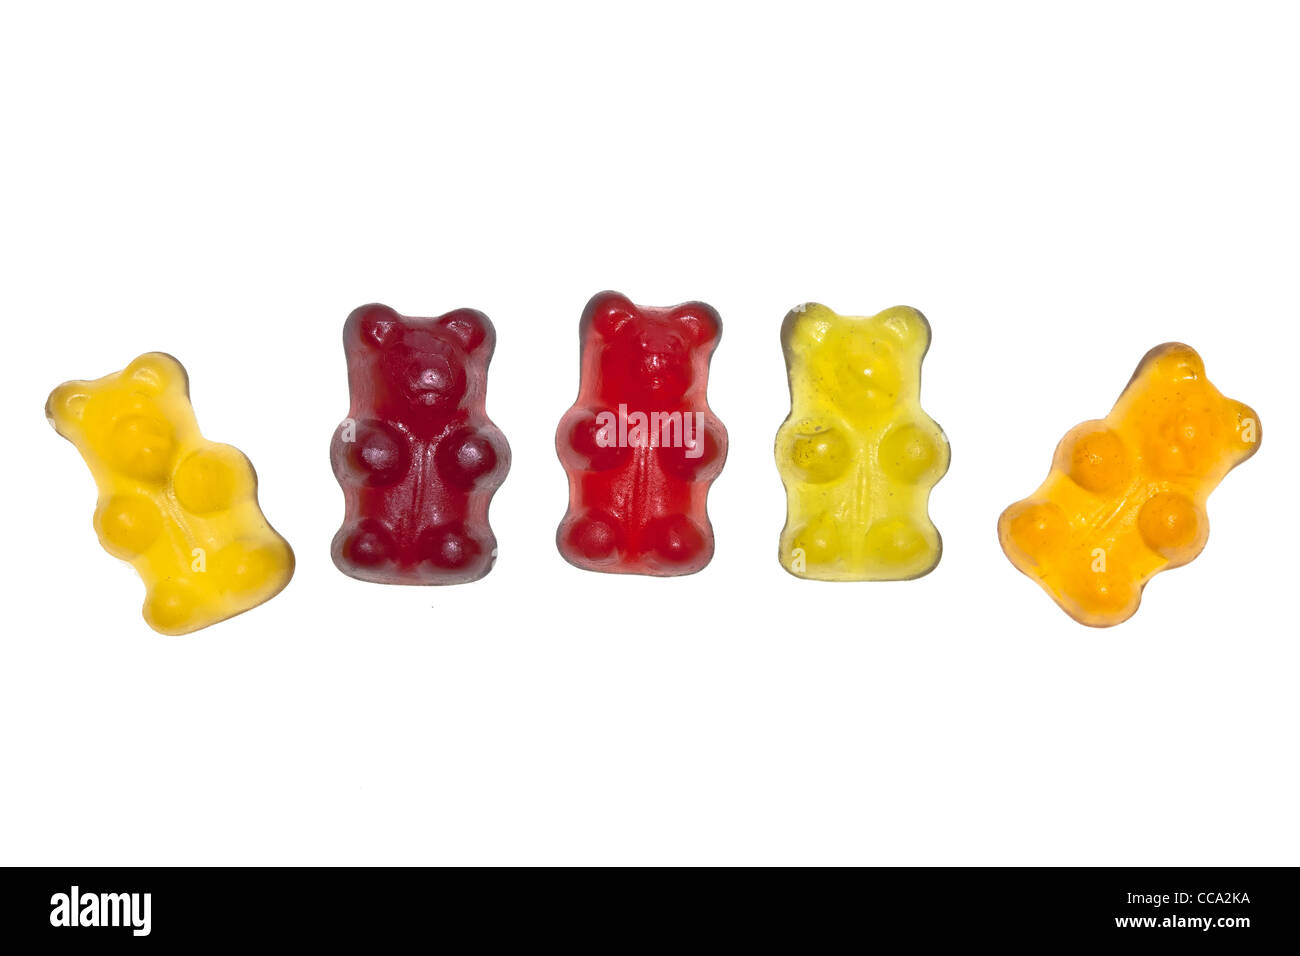 Organici di gummi bears senza gelatina, colorato e aromatizzato con succo di frutta Foto Stock